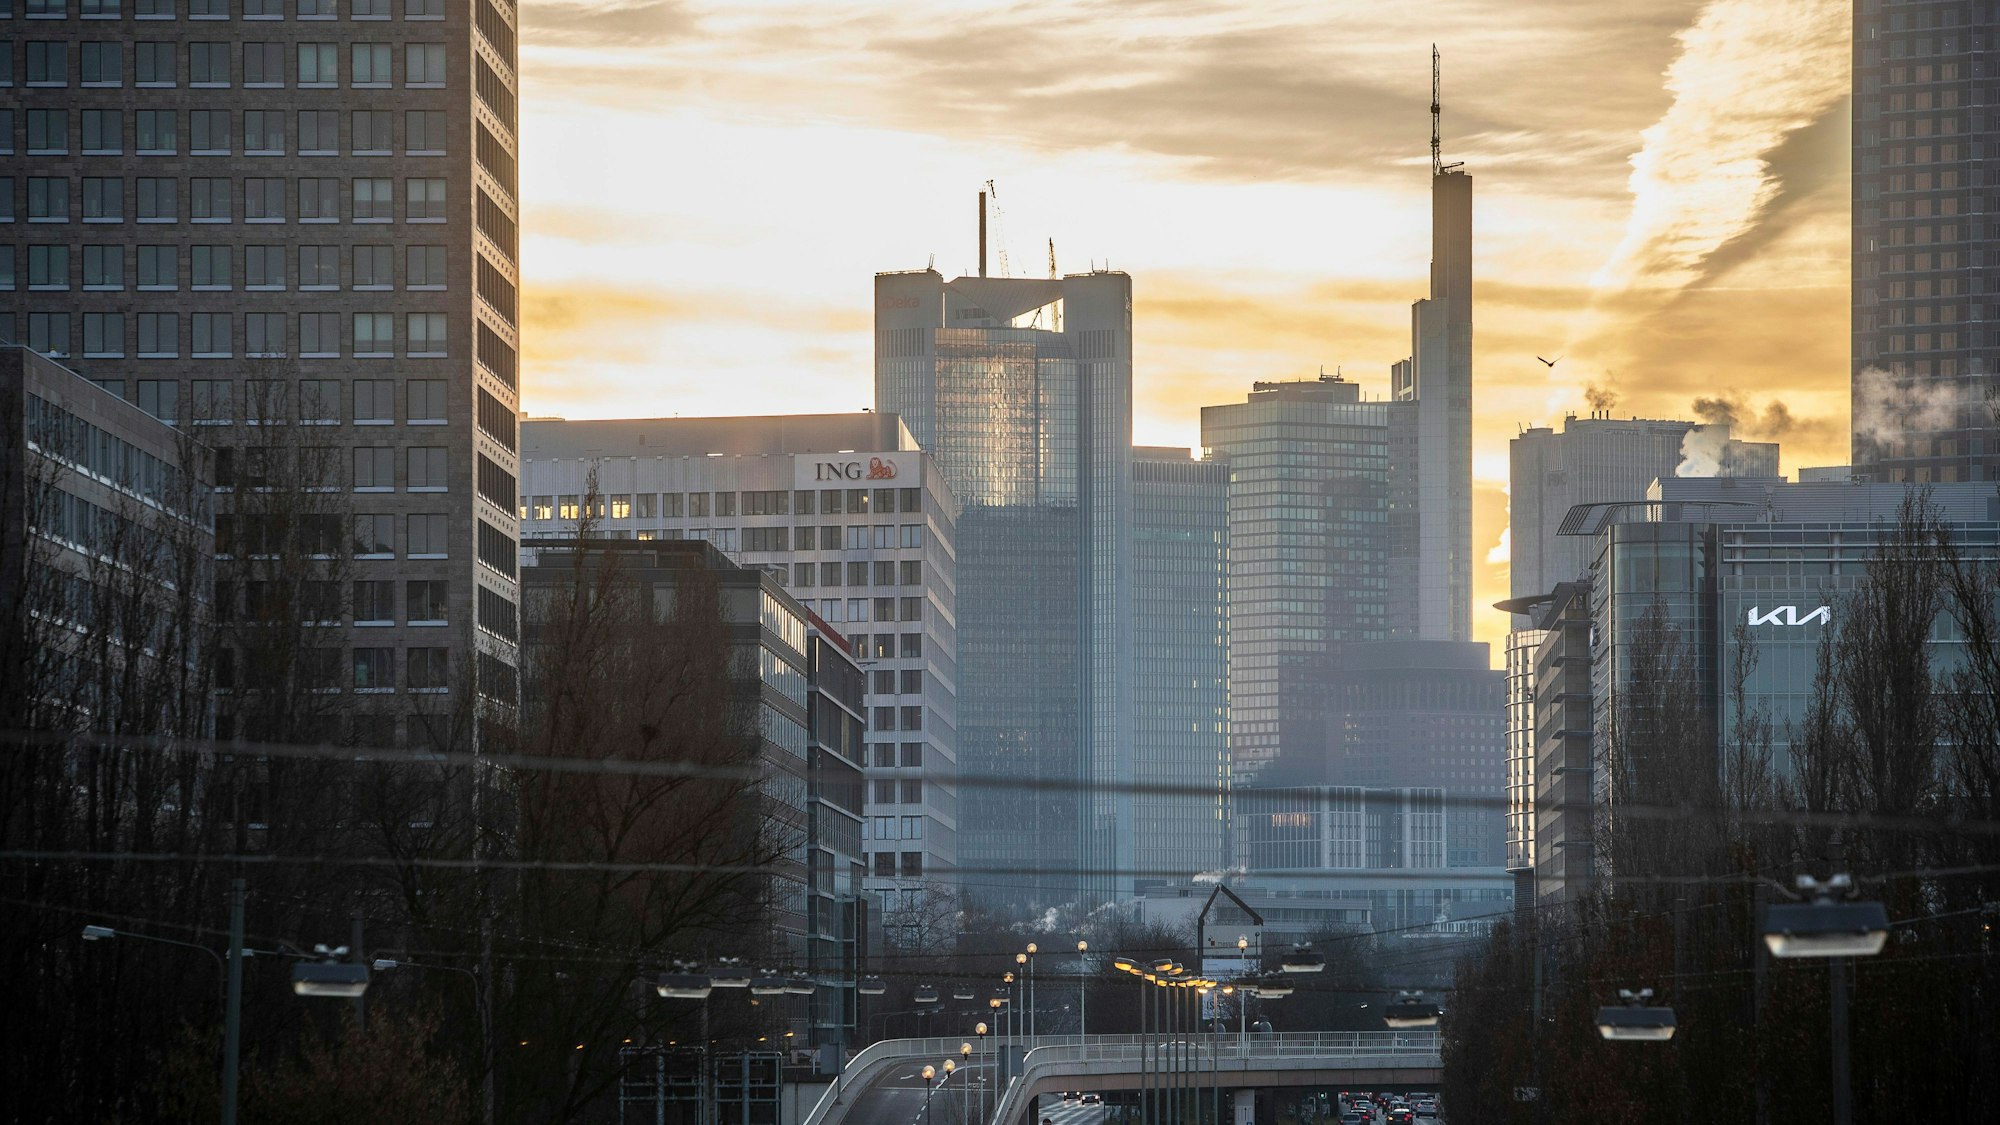 Man sieht die Skyline des Frankfurter Bankenviertels gegen den Sonnenaufgang.